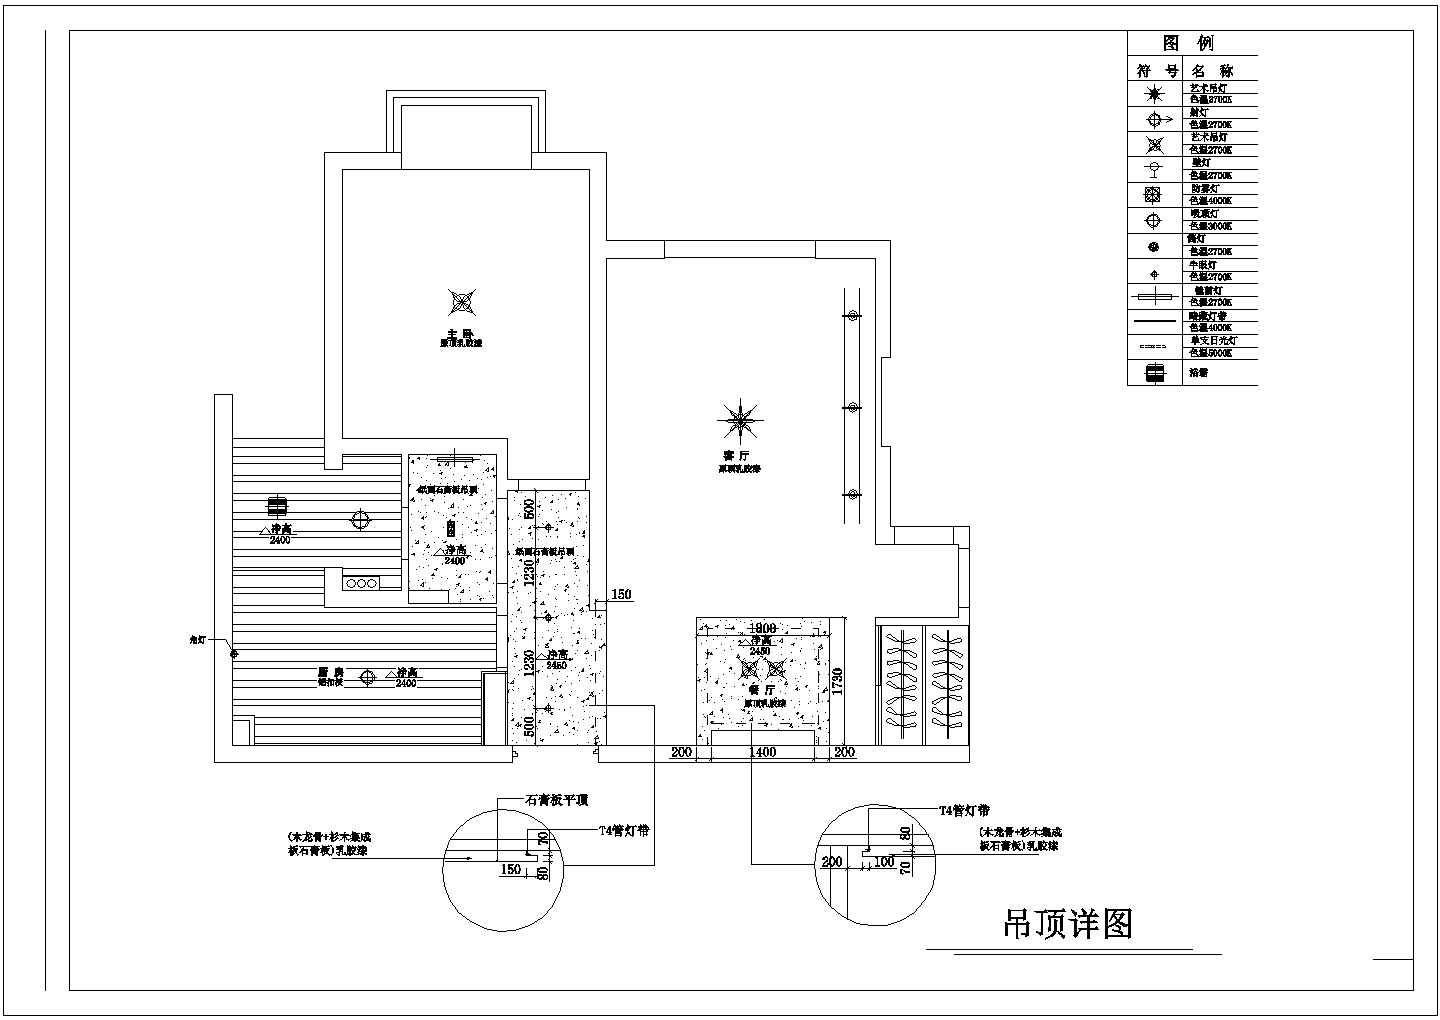 郑州市某新建小区内小三居室内装修cad平面施工图地面铺砖设计图